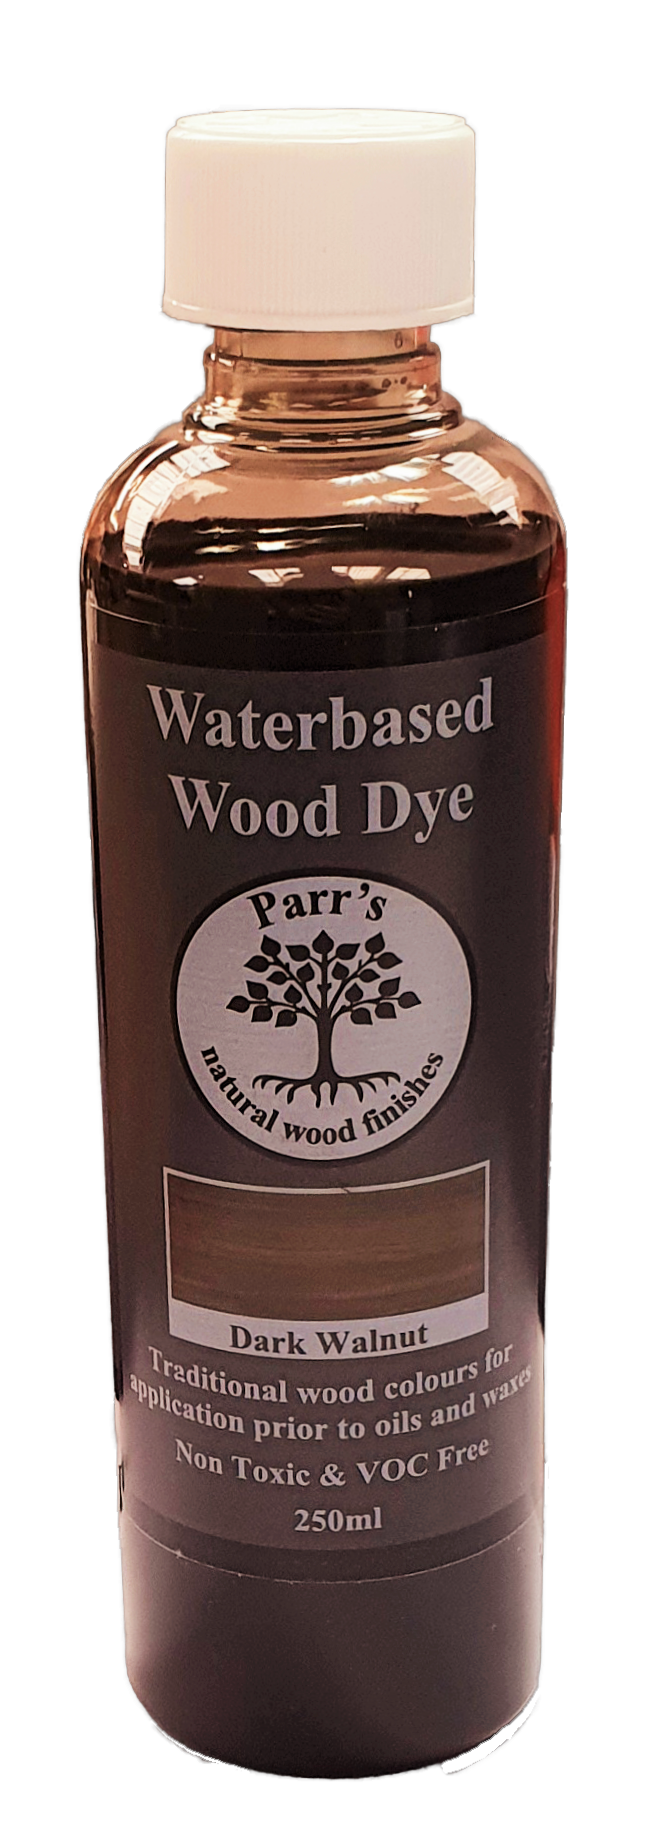 Dark Walnut Water Based Wood Dye